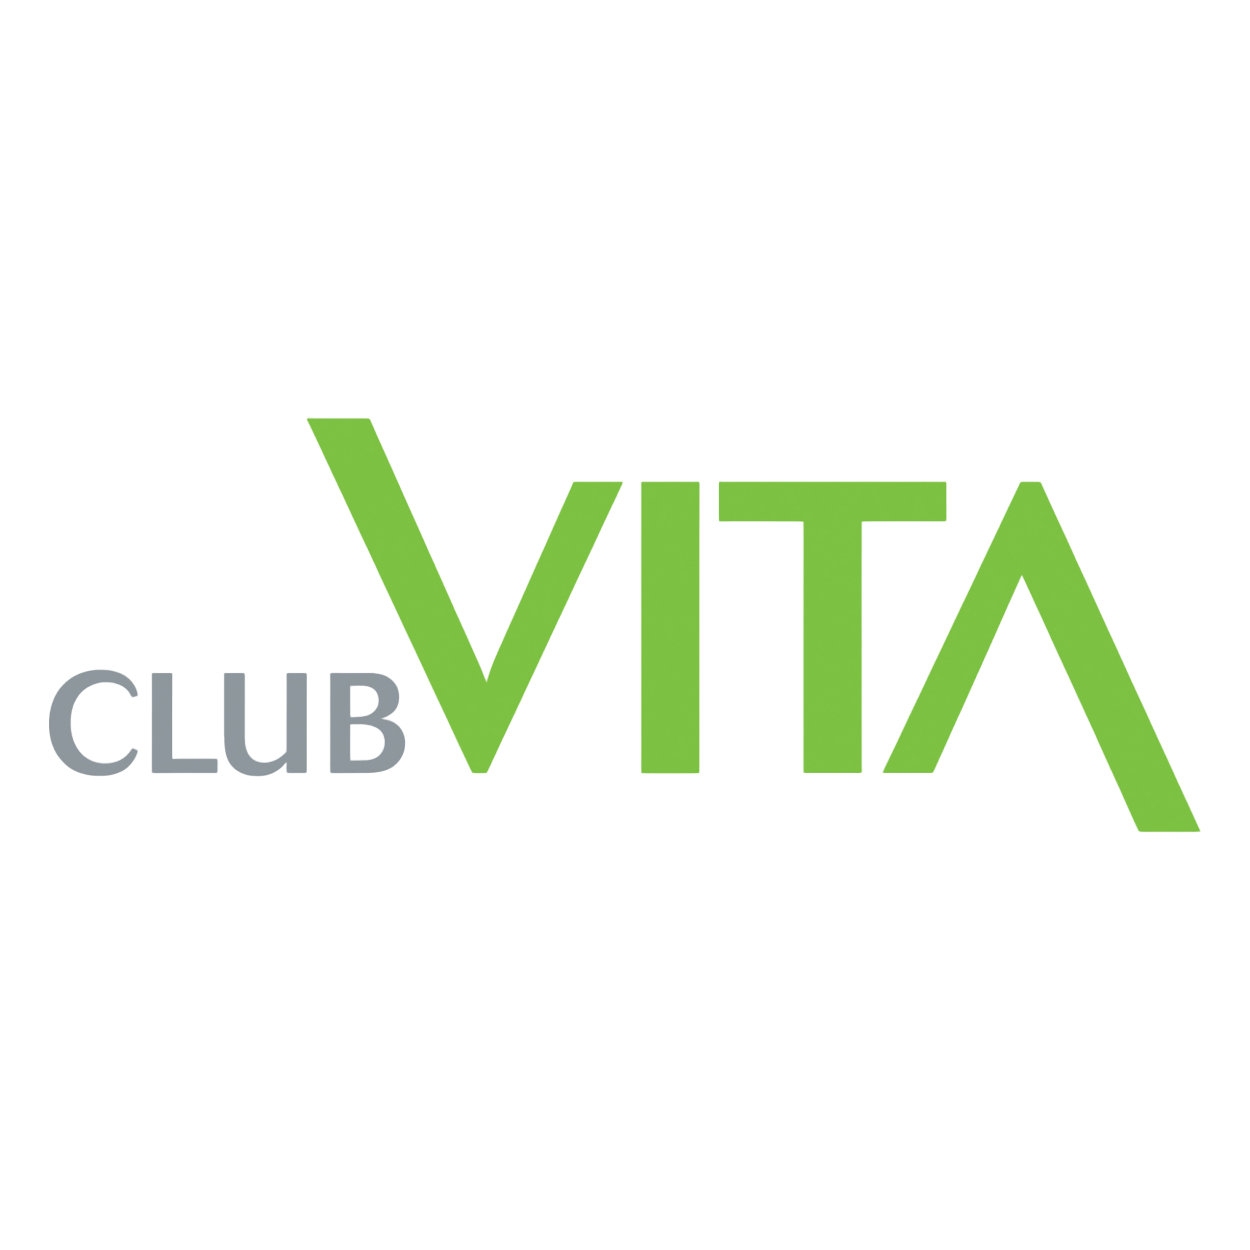 club vita logo in grey and green writing